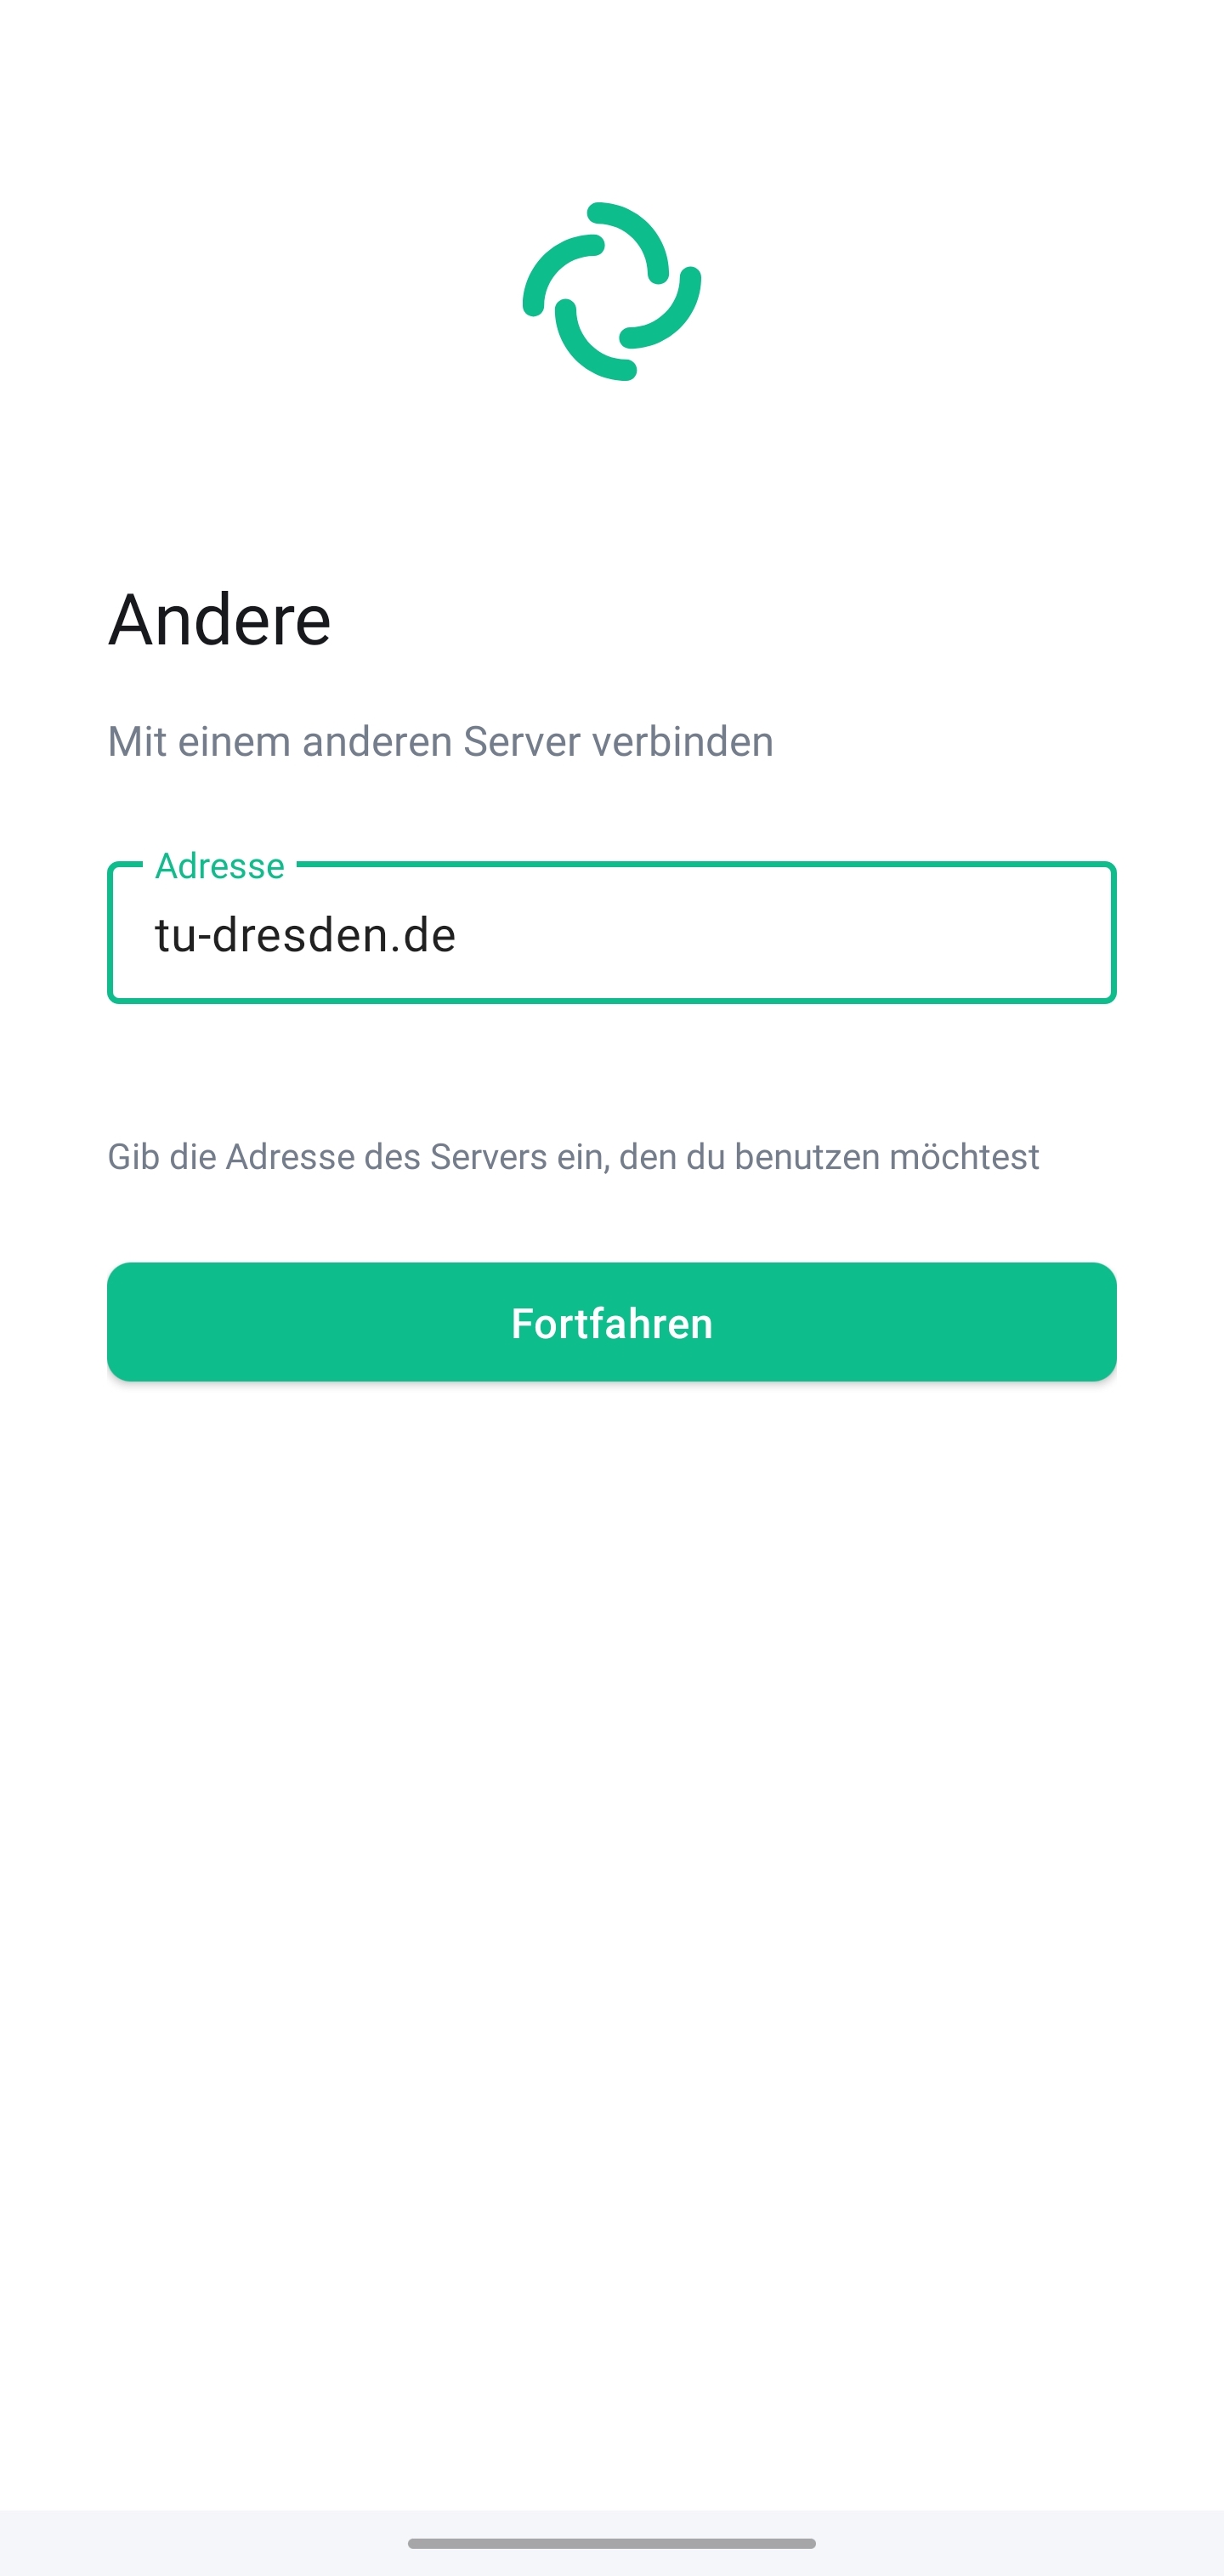 Bildschirm “Andere” zur Verbindung mit einem anderen Server. Das Textfeld Adresse erfordert die Eingabe der Serveradresse, darunter befindet sich der Fortfahren-Button.